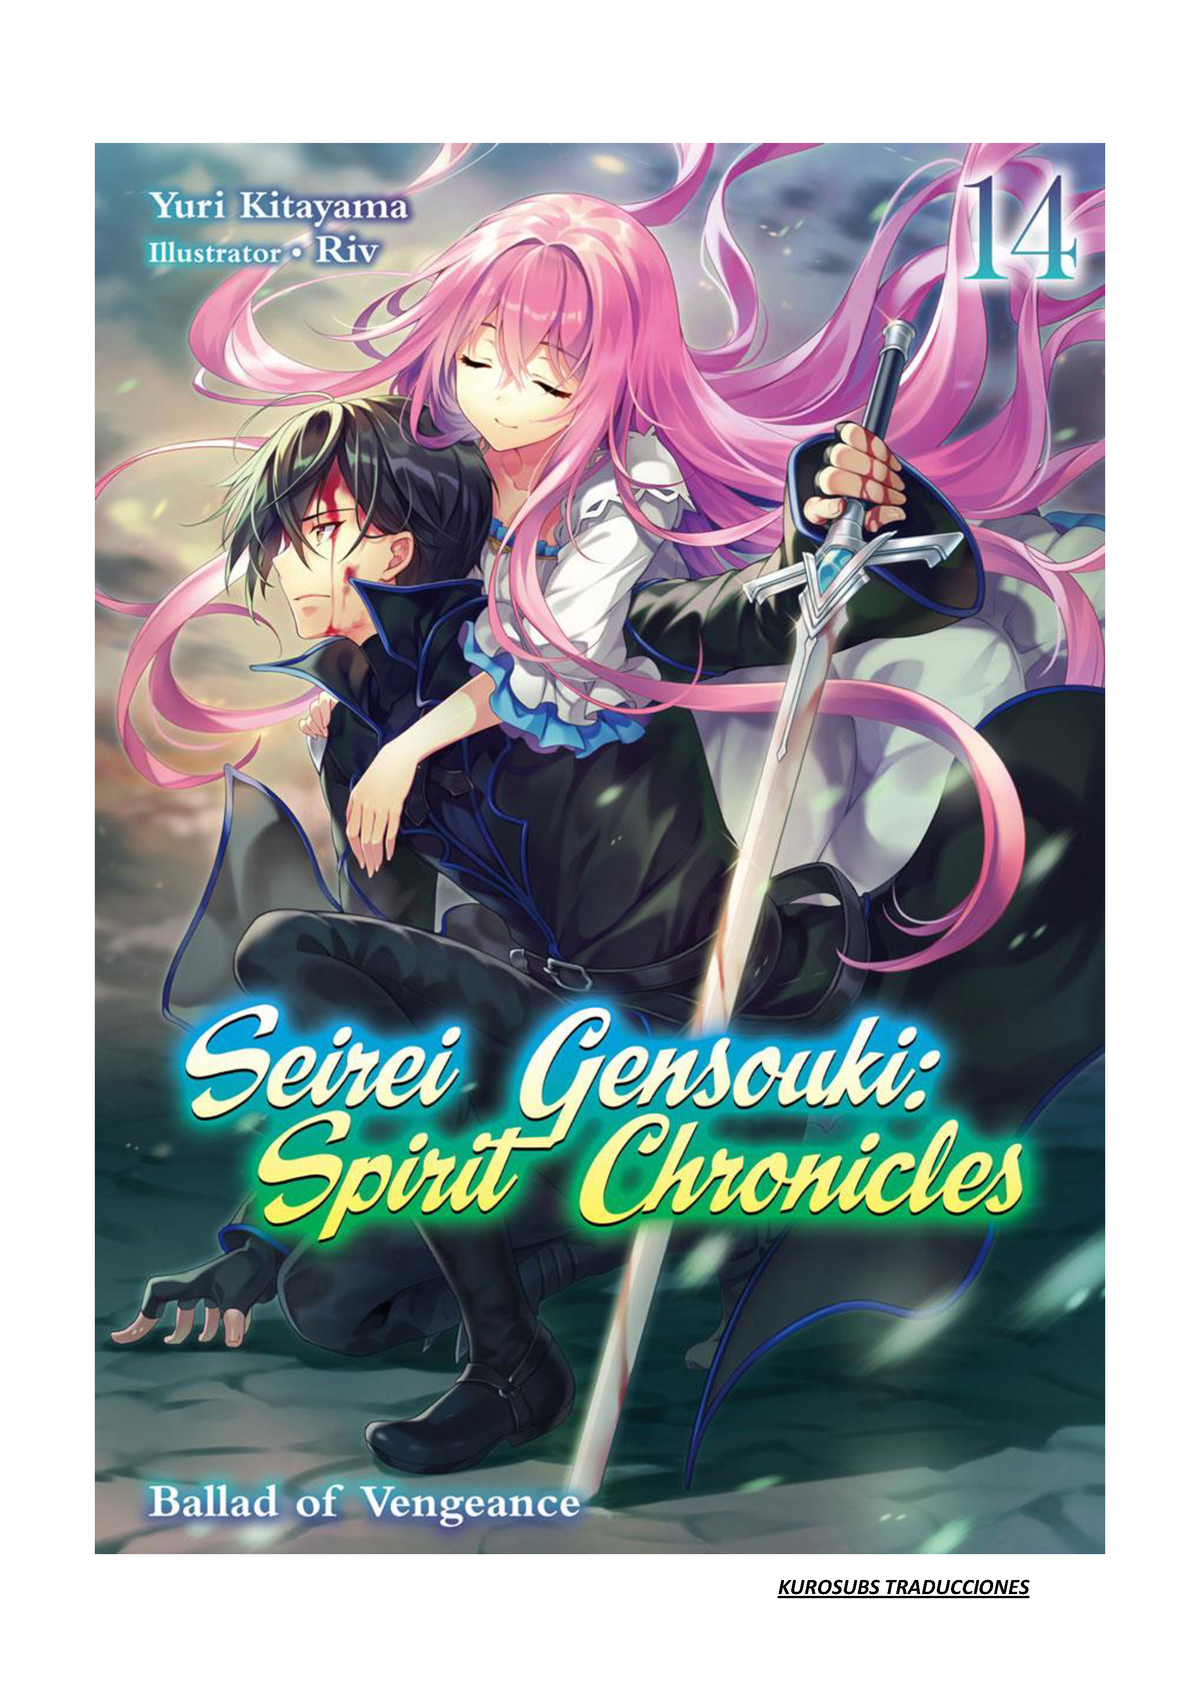 Seirei Gensouki: Spirit Chronicles  Episodio 1 COMPLETO (Subs en español)  